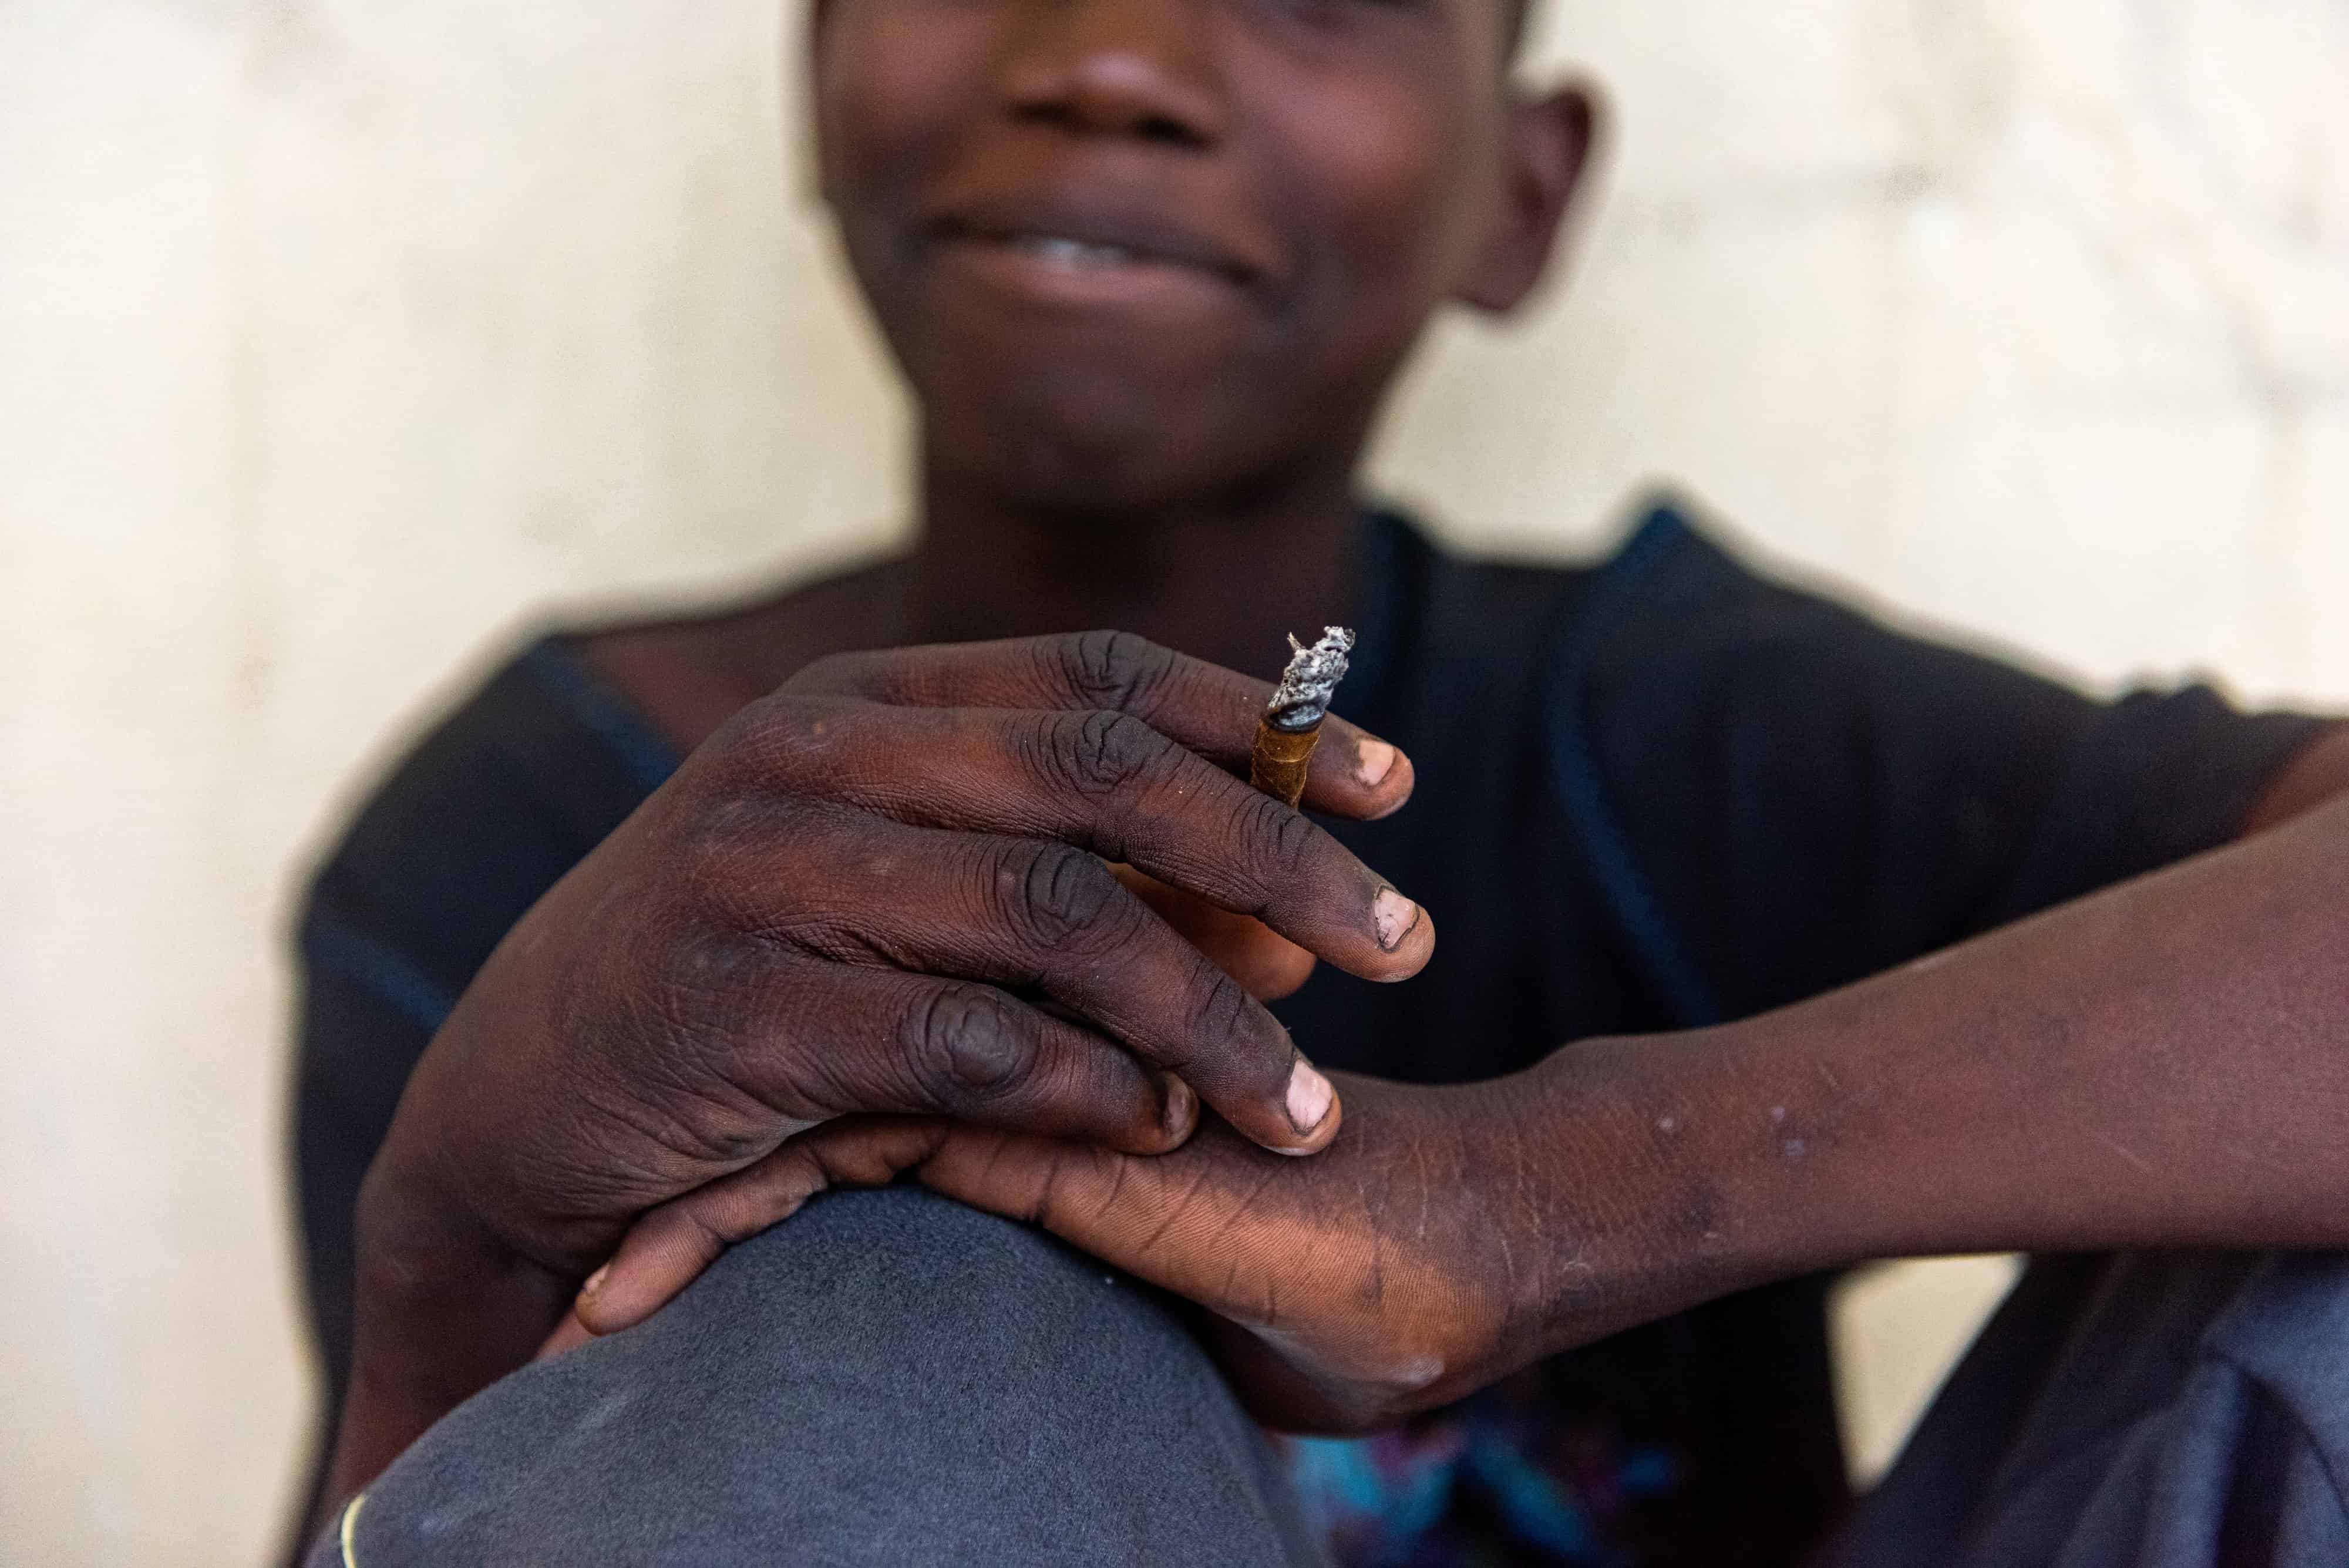 Un niño consume droga en un refugio abandonado, financiado por el estado haitiano para niños de la calle, el 27 de mayo de 2022, en Puerto Príncipe (Haití).